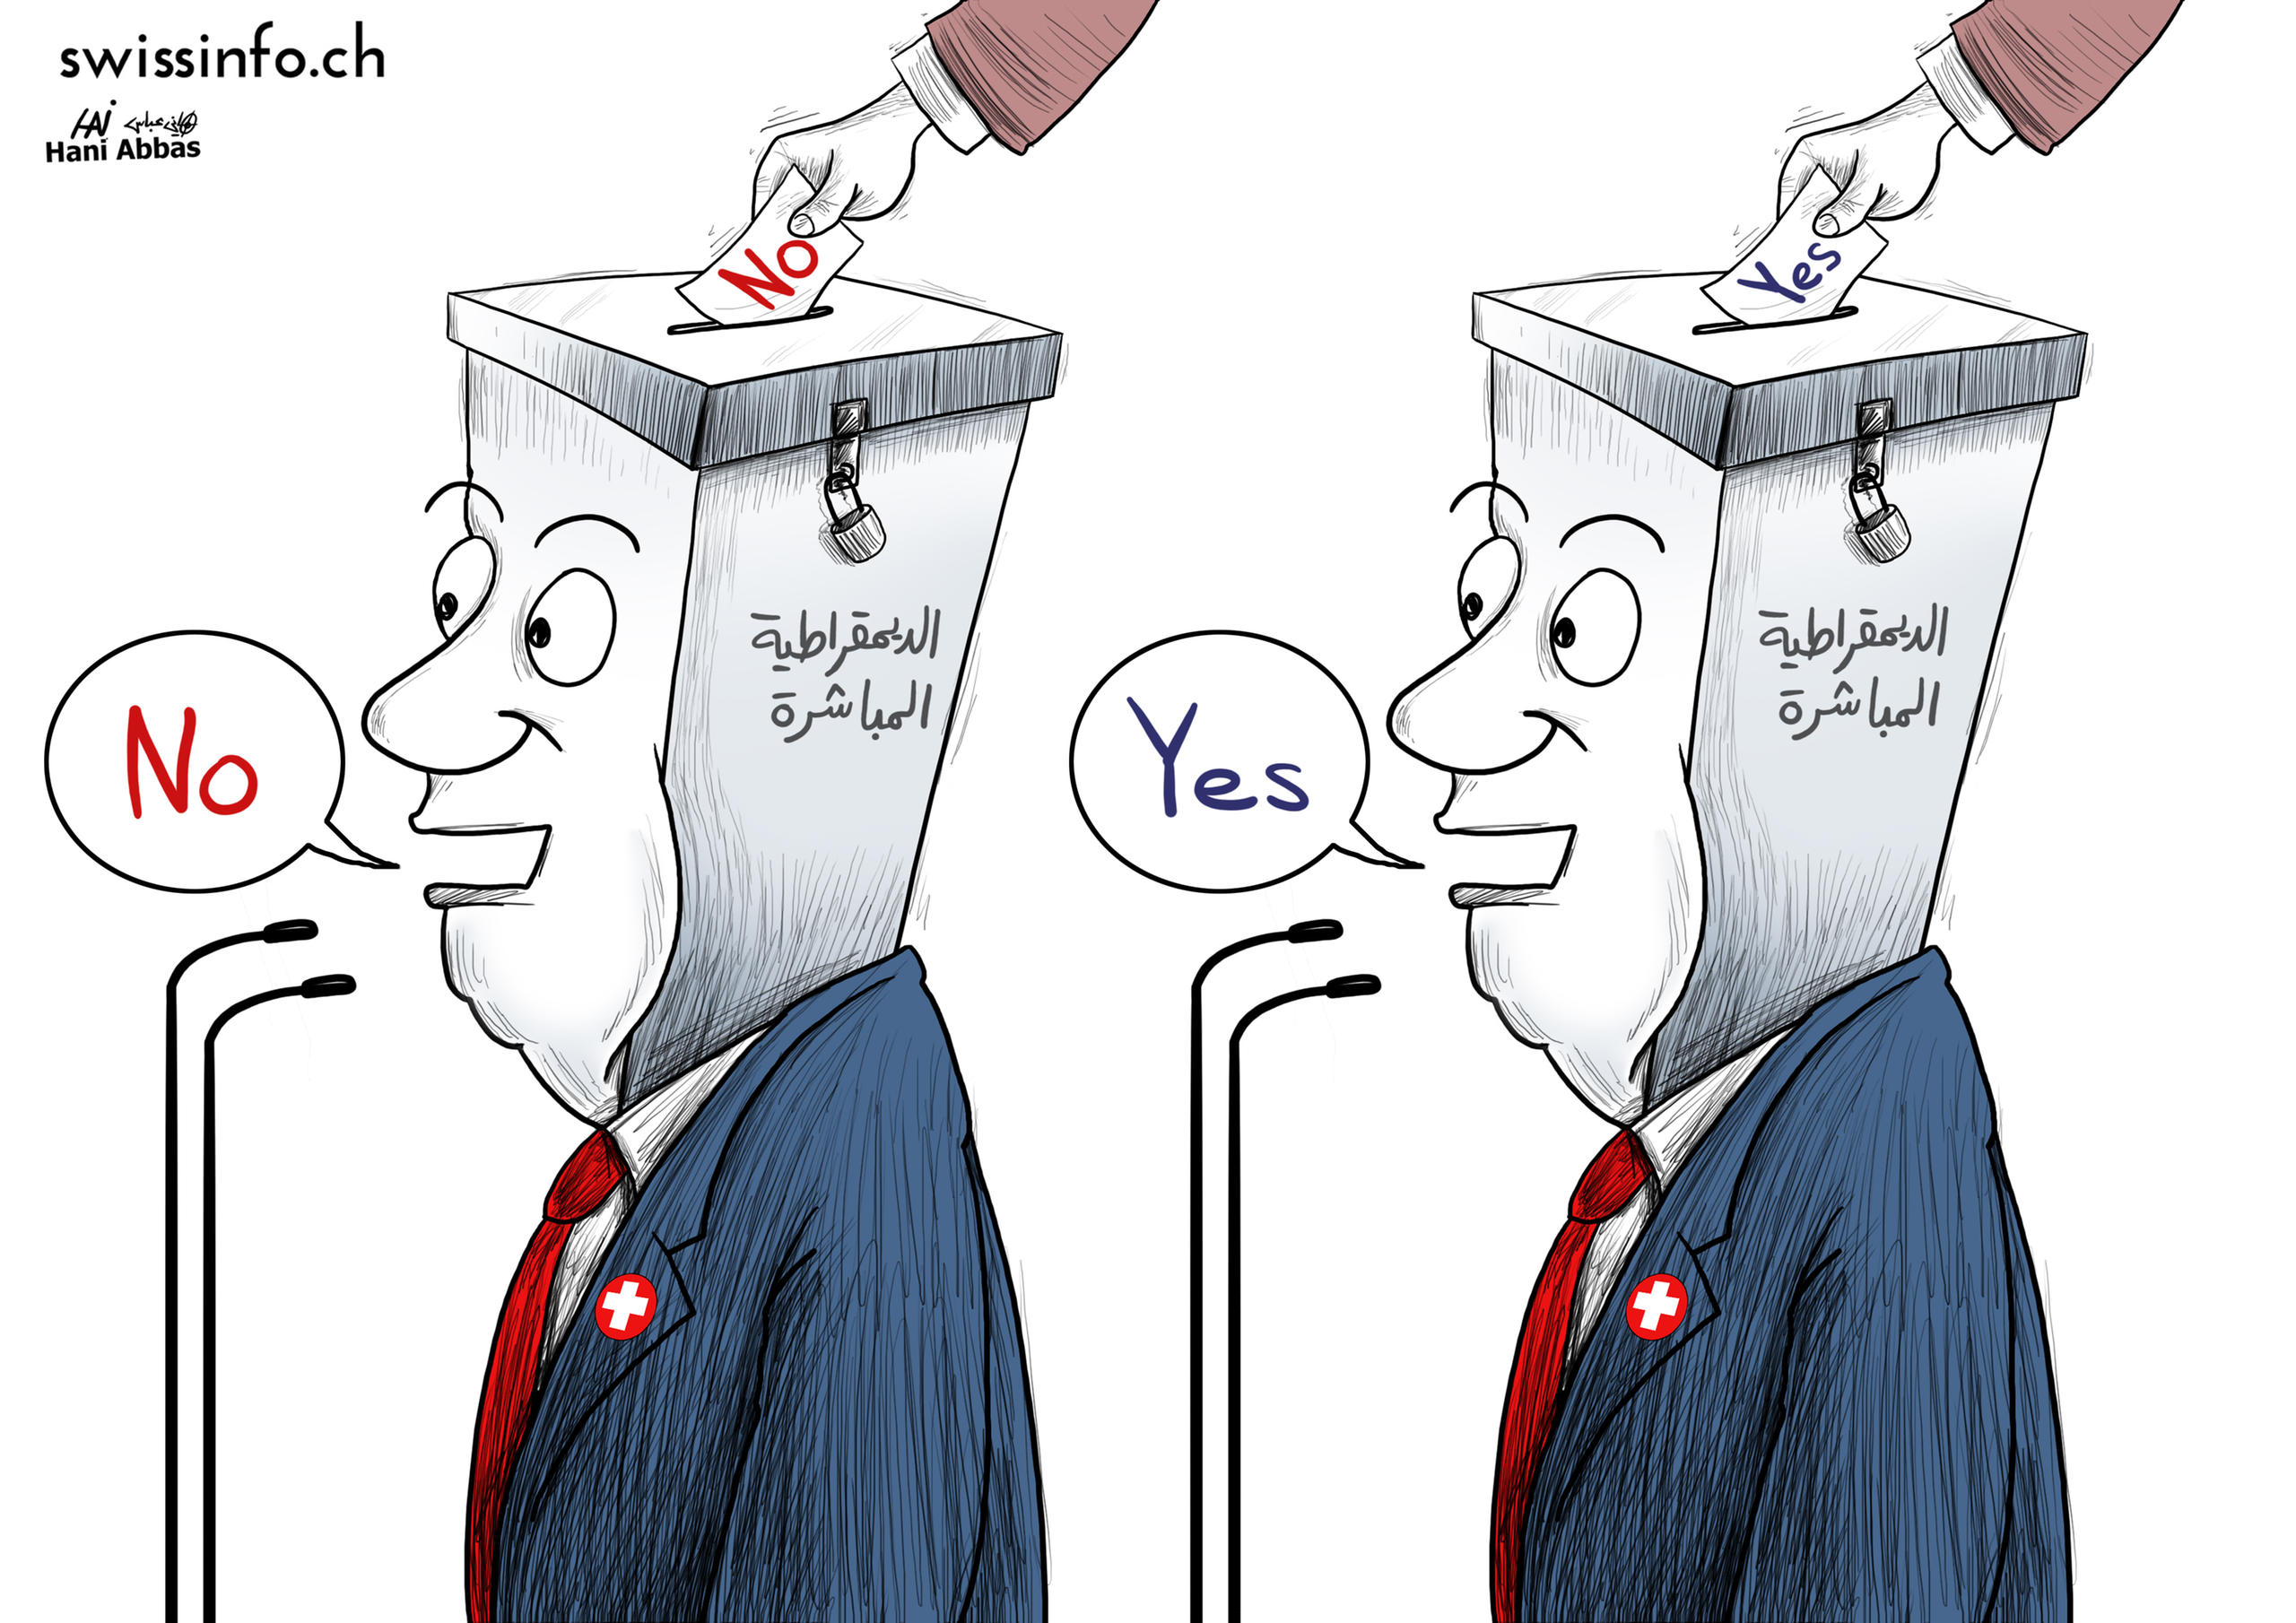 رسم كاريكاتوري عن الديمقراطية المباشرة في سويسرا